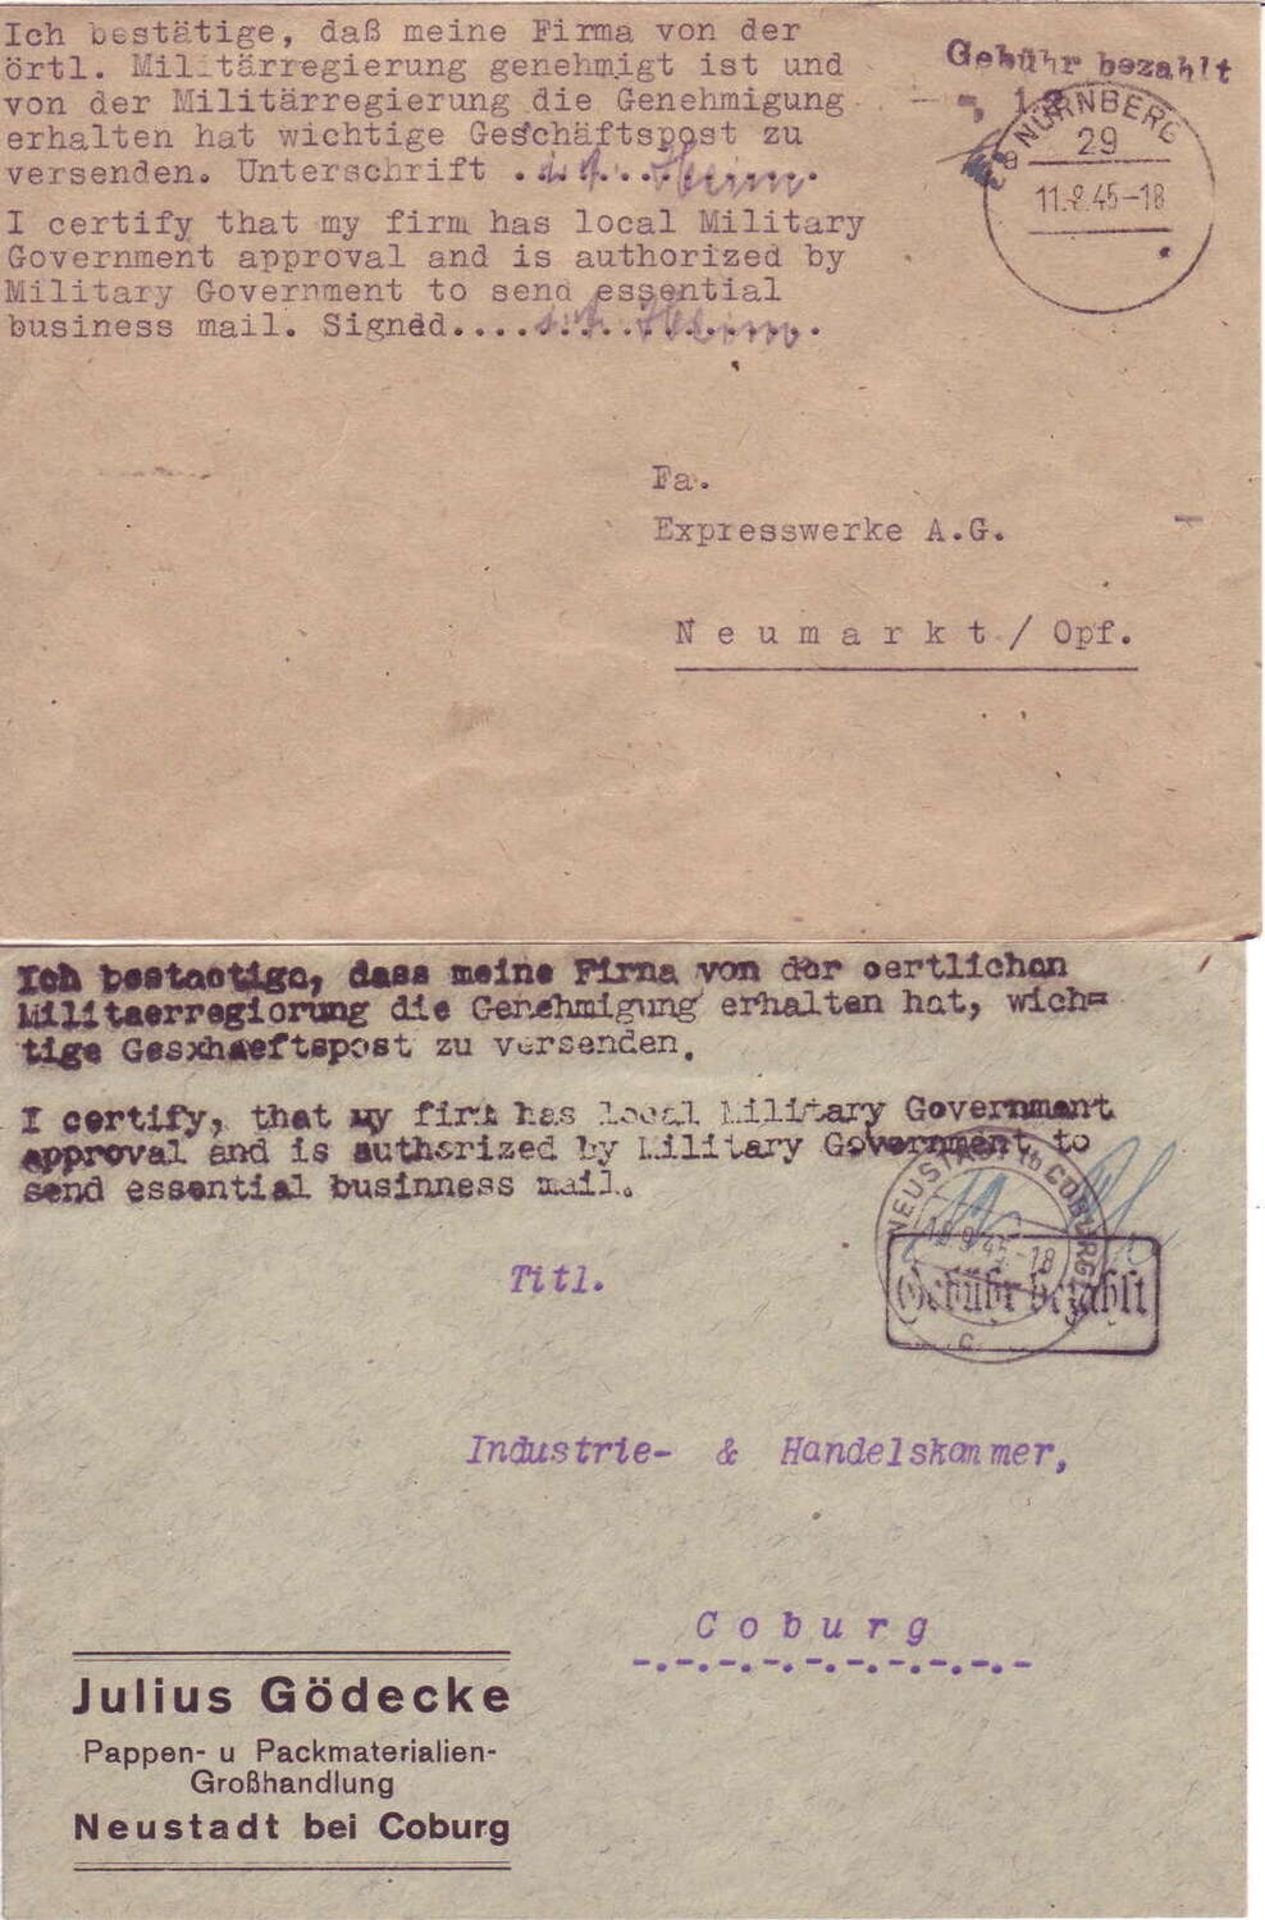 Besetzung Bayern 1945, zwei "Gebühr bezahlt" - Belege mit Text.Occupation Bavaria 1945, two "fee p